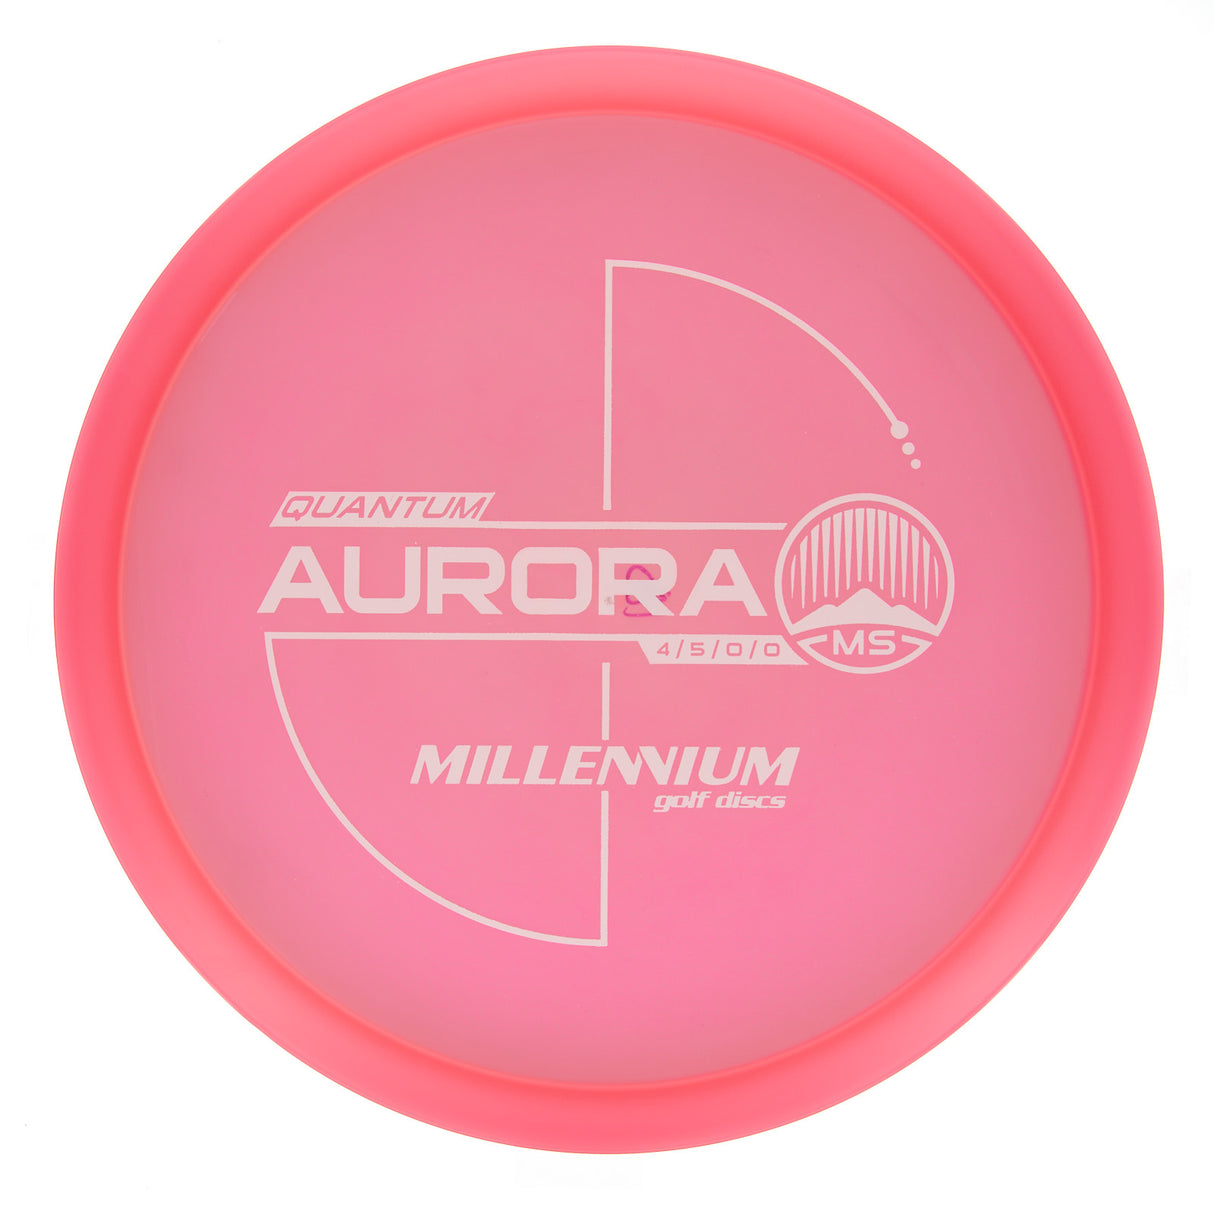 Millennium Aurora MS - Quantum 180g | Style 0001